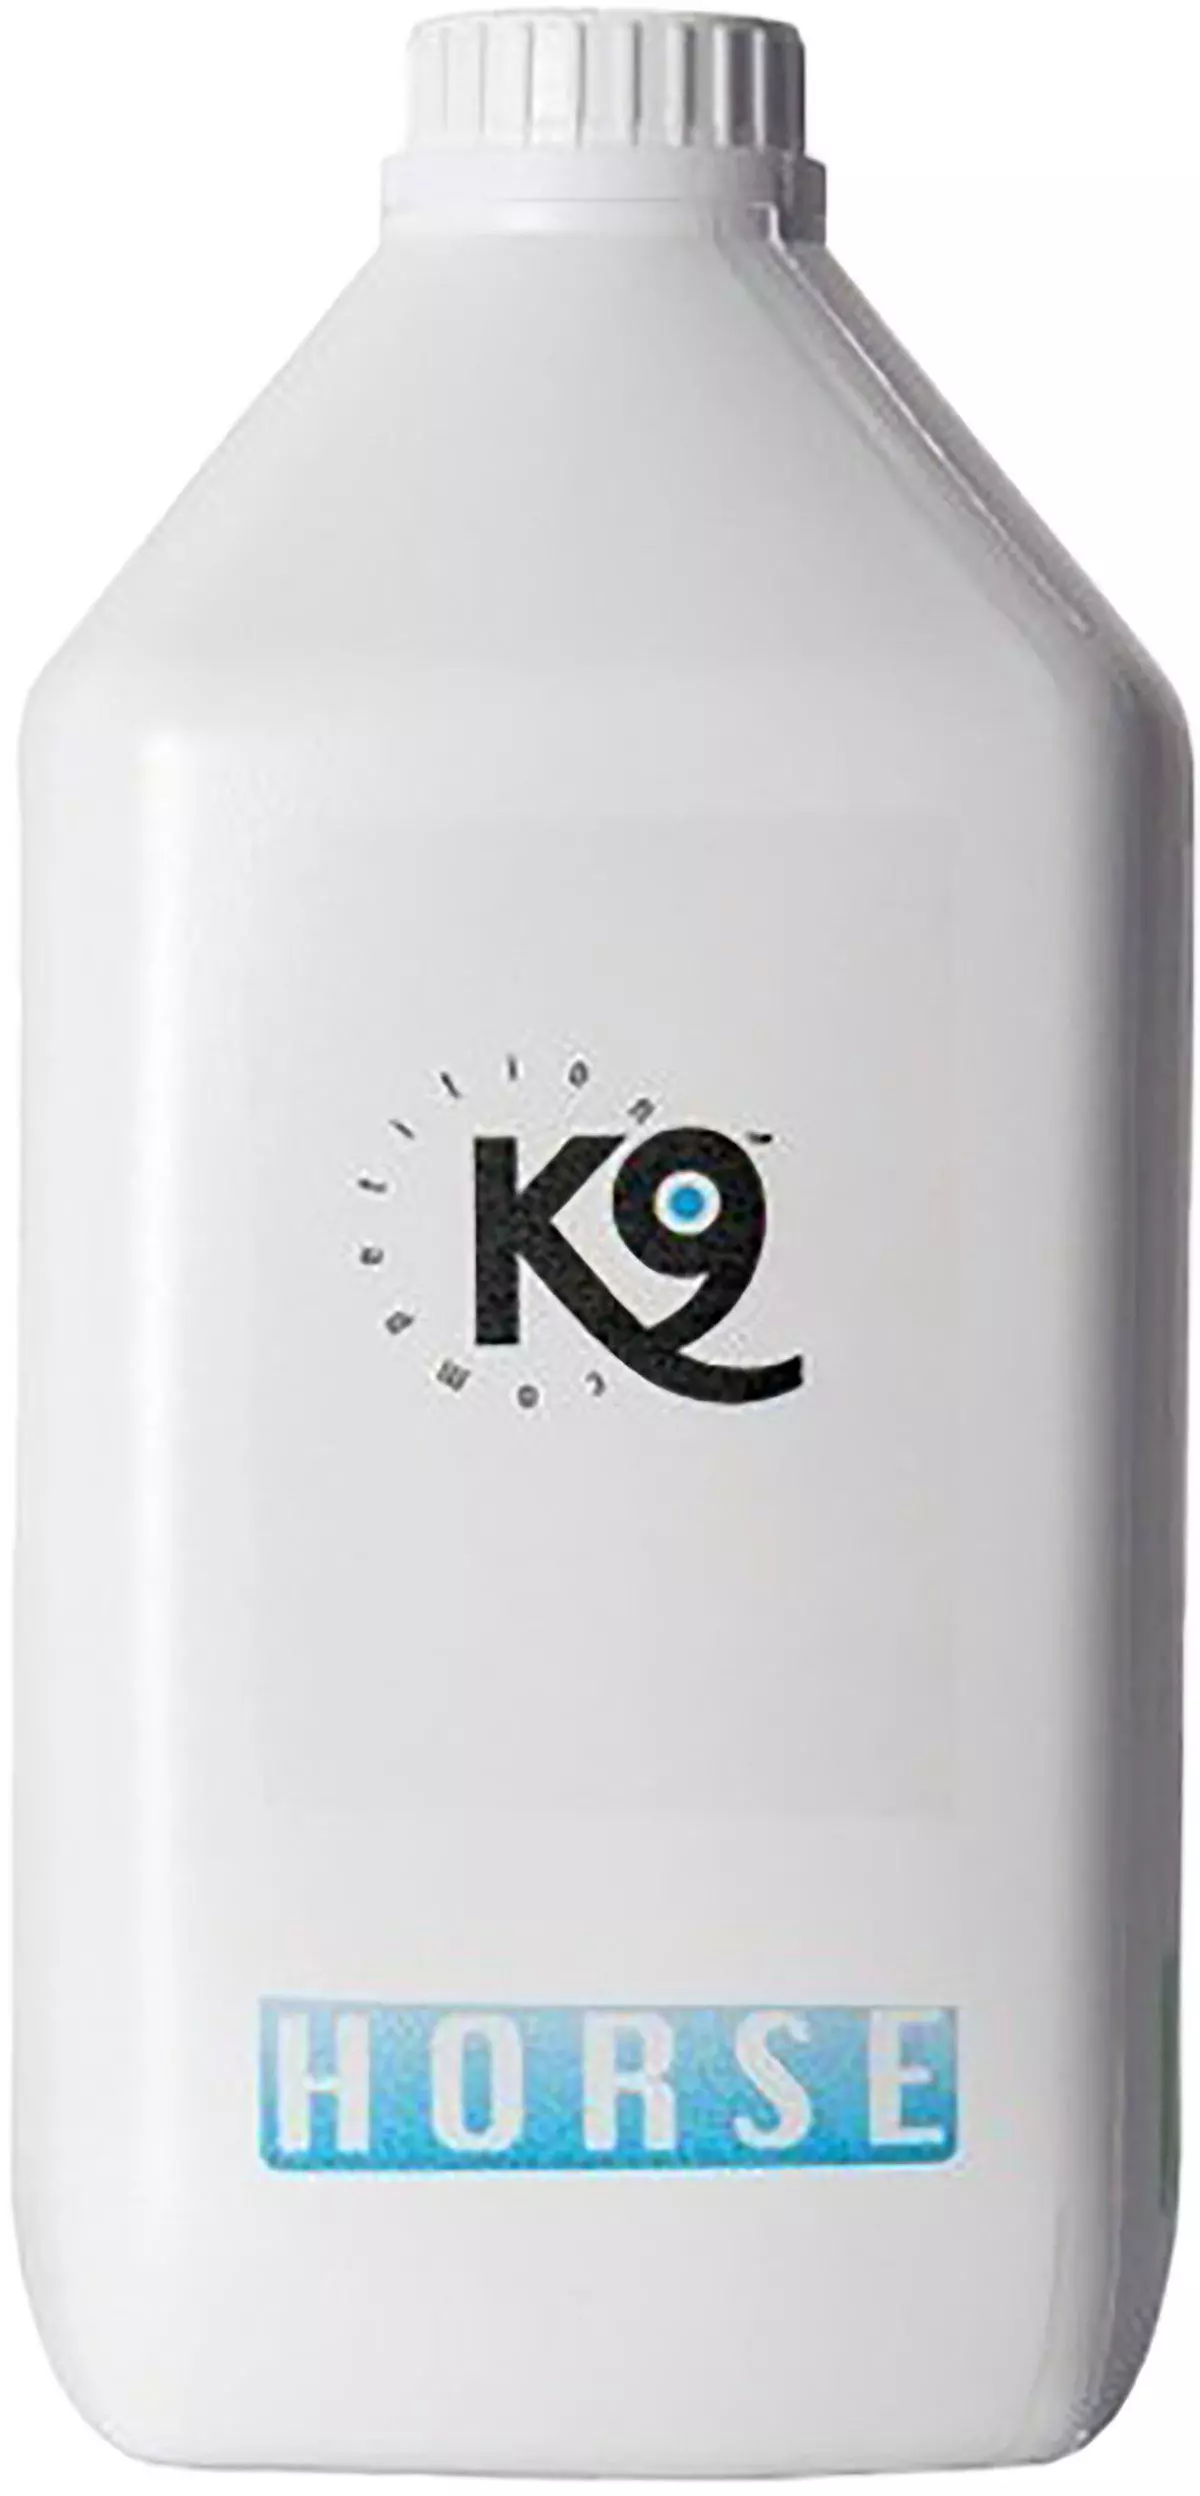 K9 Horse Shampoo Bright White ,7L